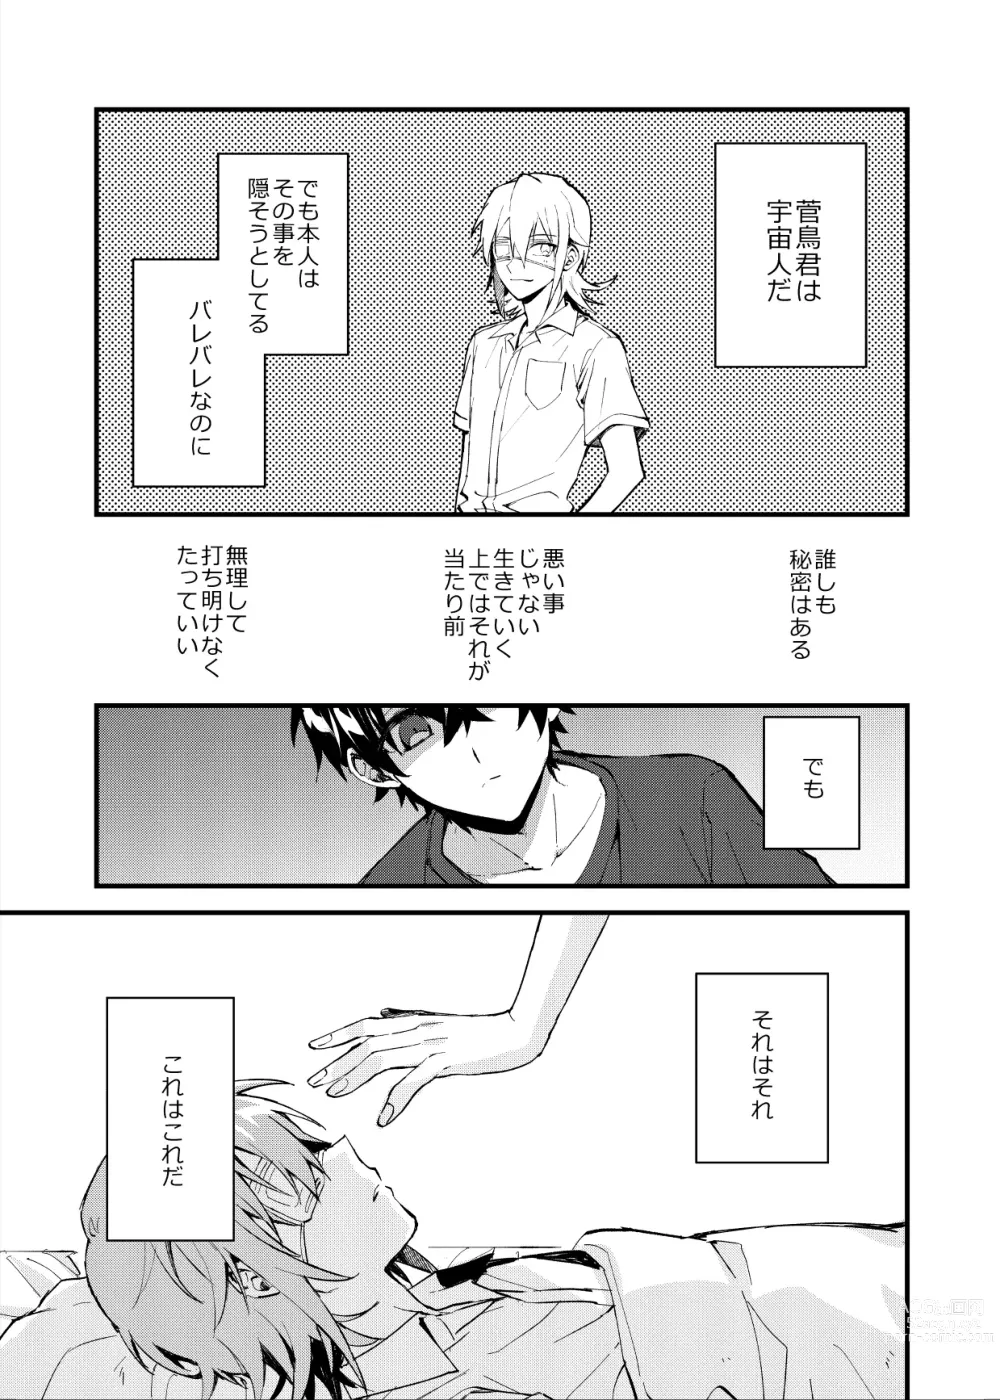 Page 4 of doujinshi Yoaketa Mukou ni Mieru Hoshi